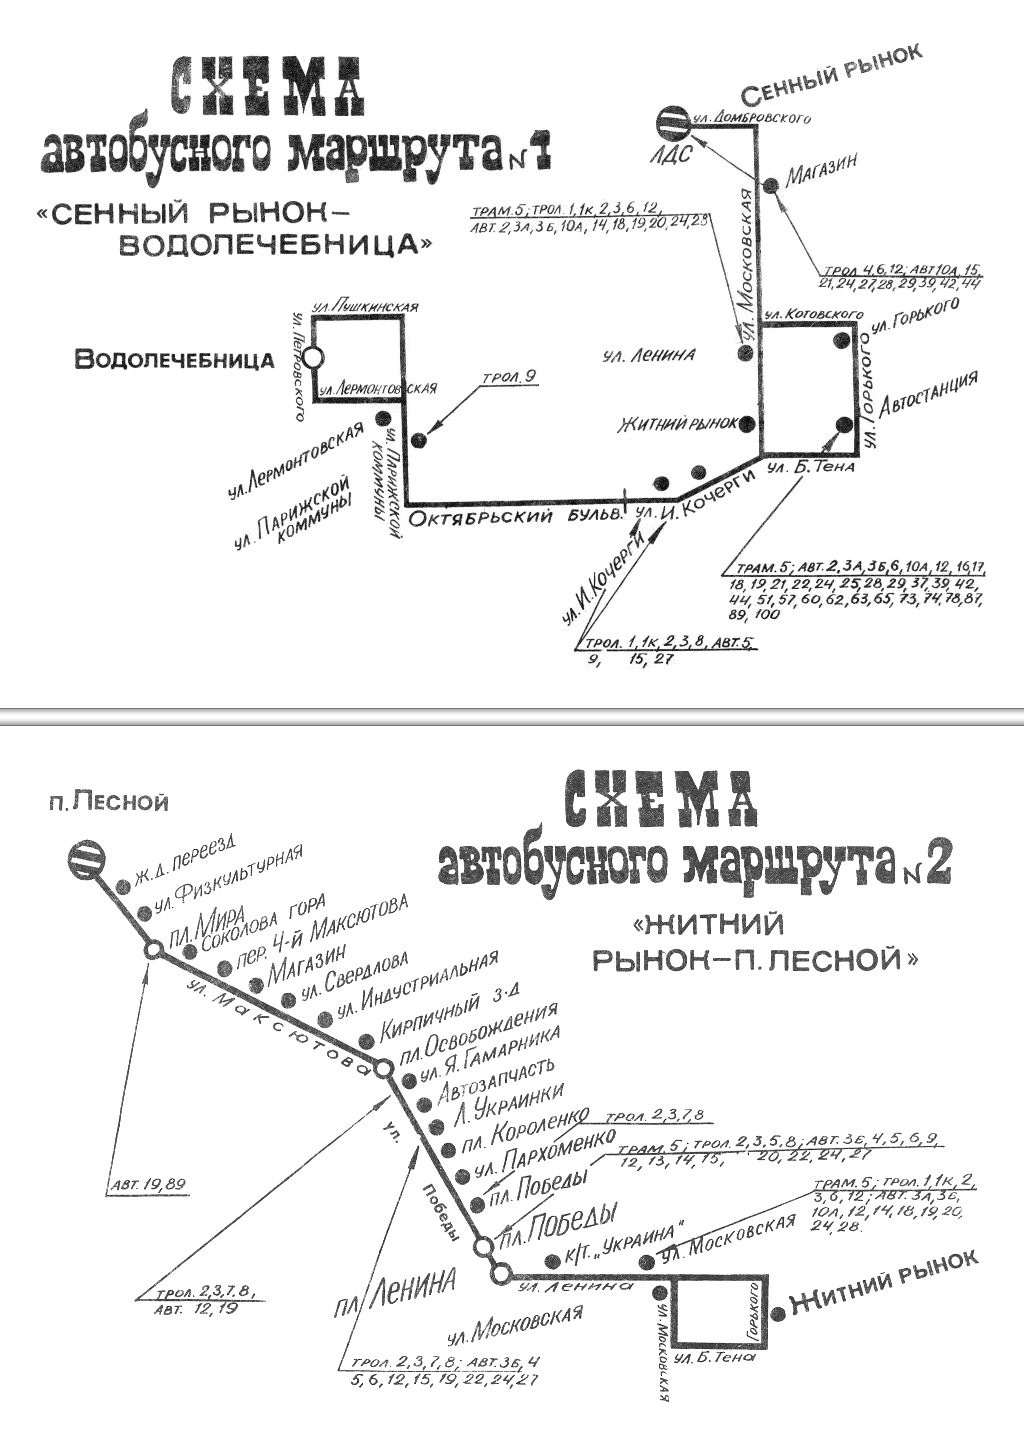 Zhytomyr — Maps